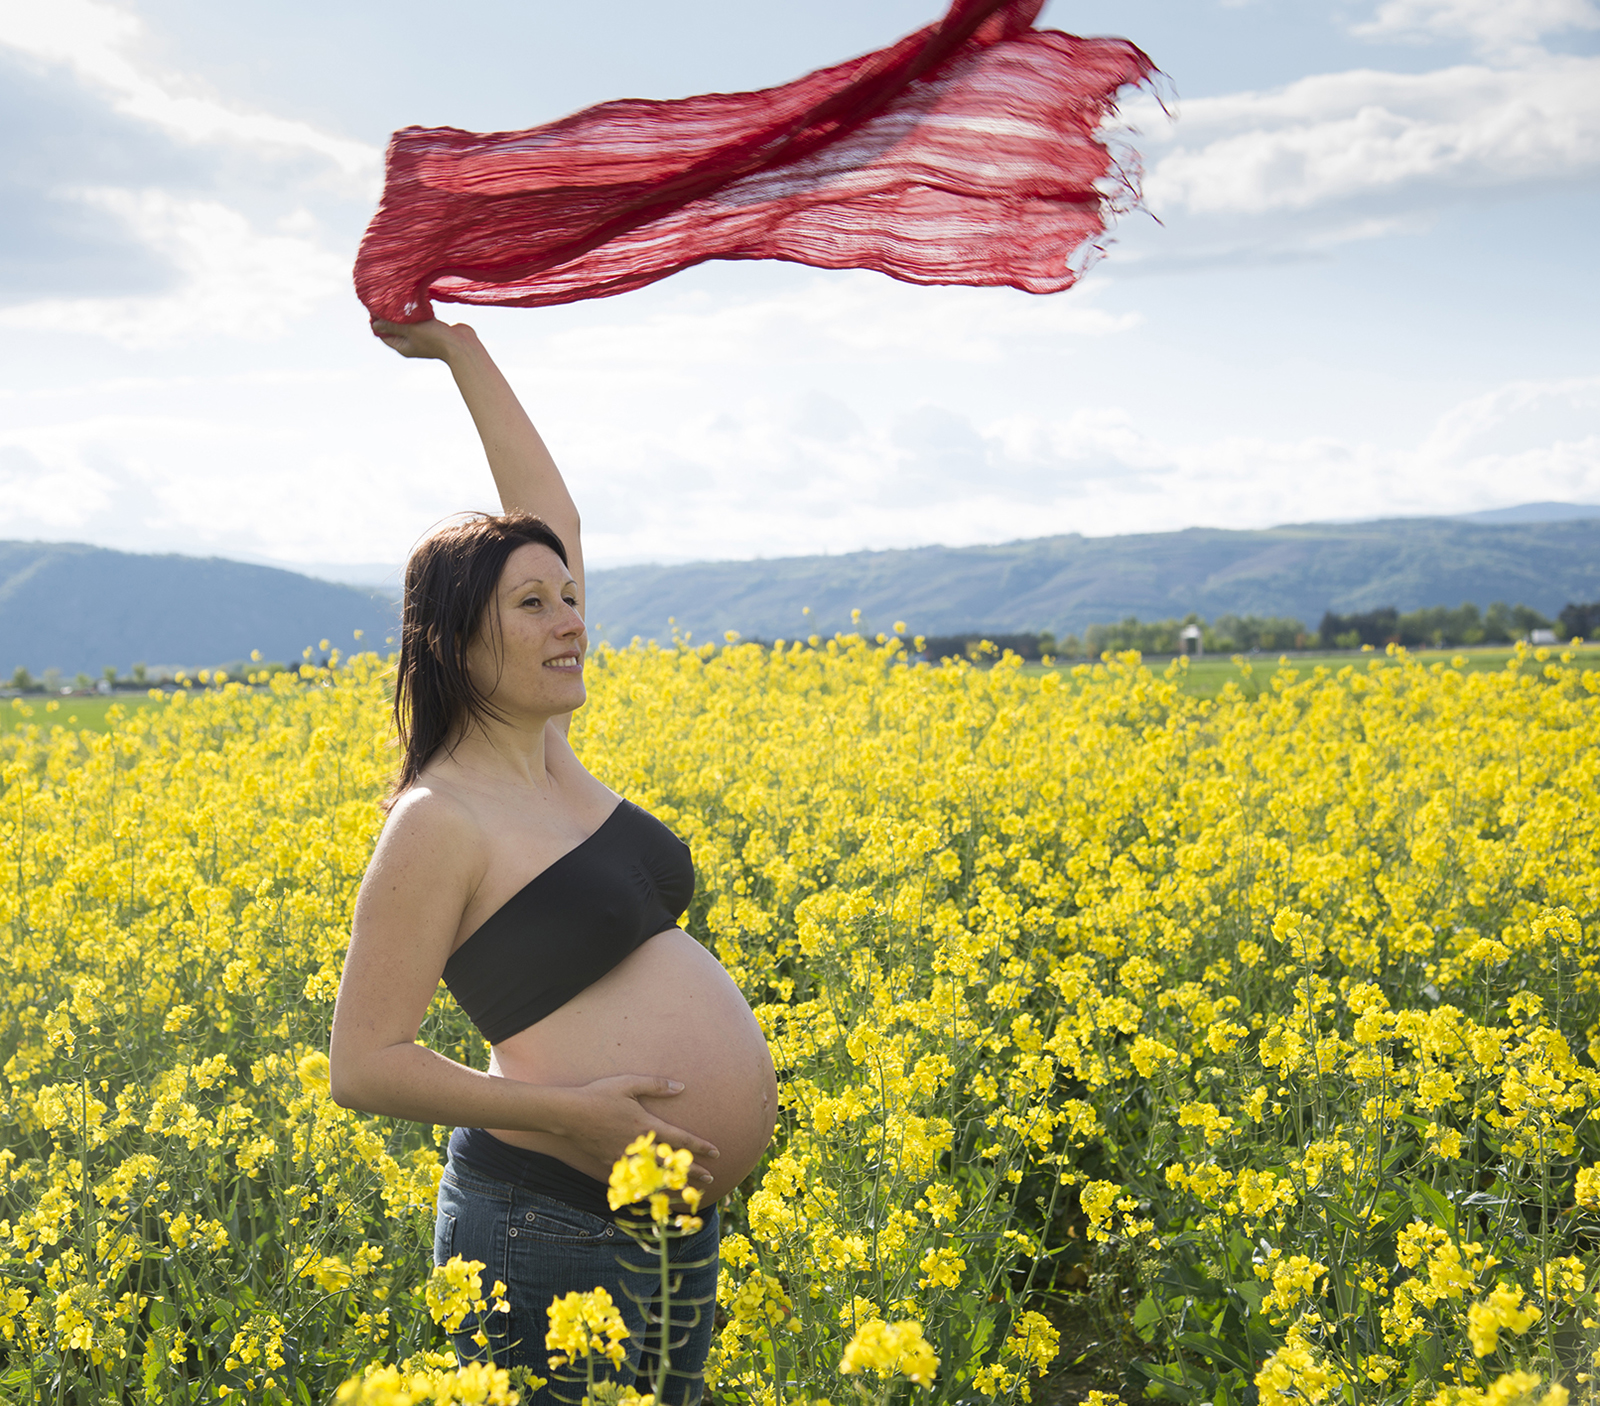 femme enceinte dans des champs de colza avec un foulard rouge au vent